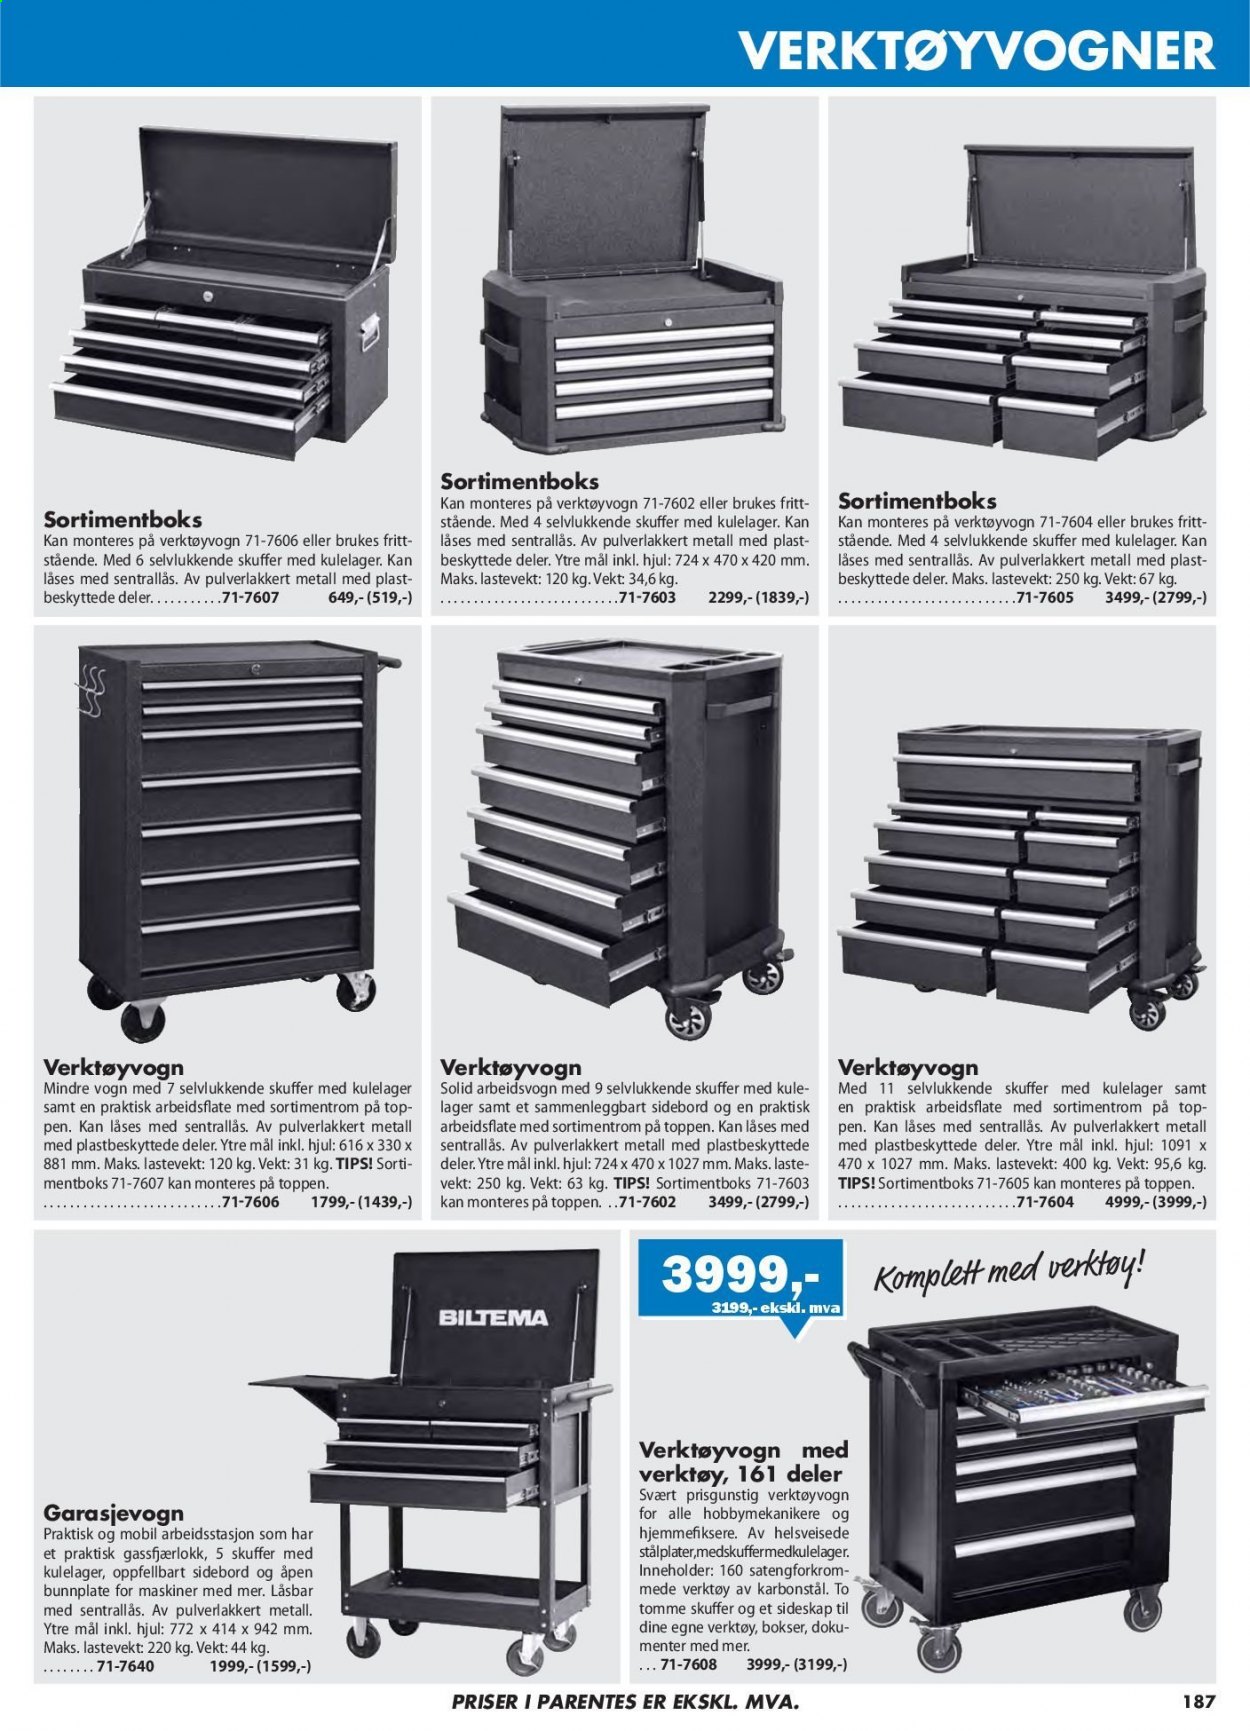 thumbnail - Kundeavis Biltema - Produkter fra tilbudsaviser - verktøy, verktøyvogn. Side 187.